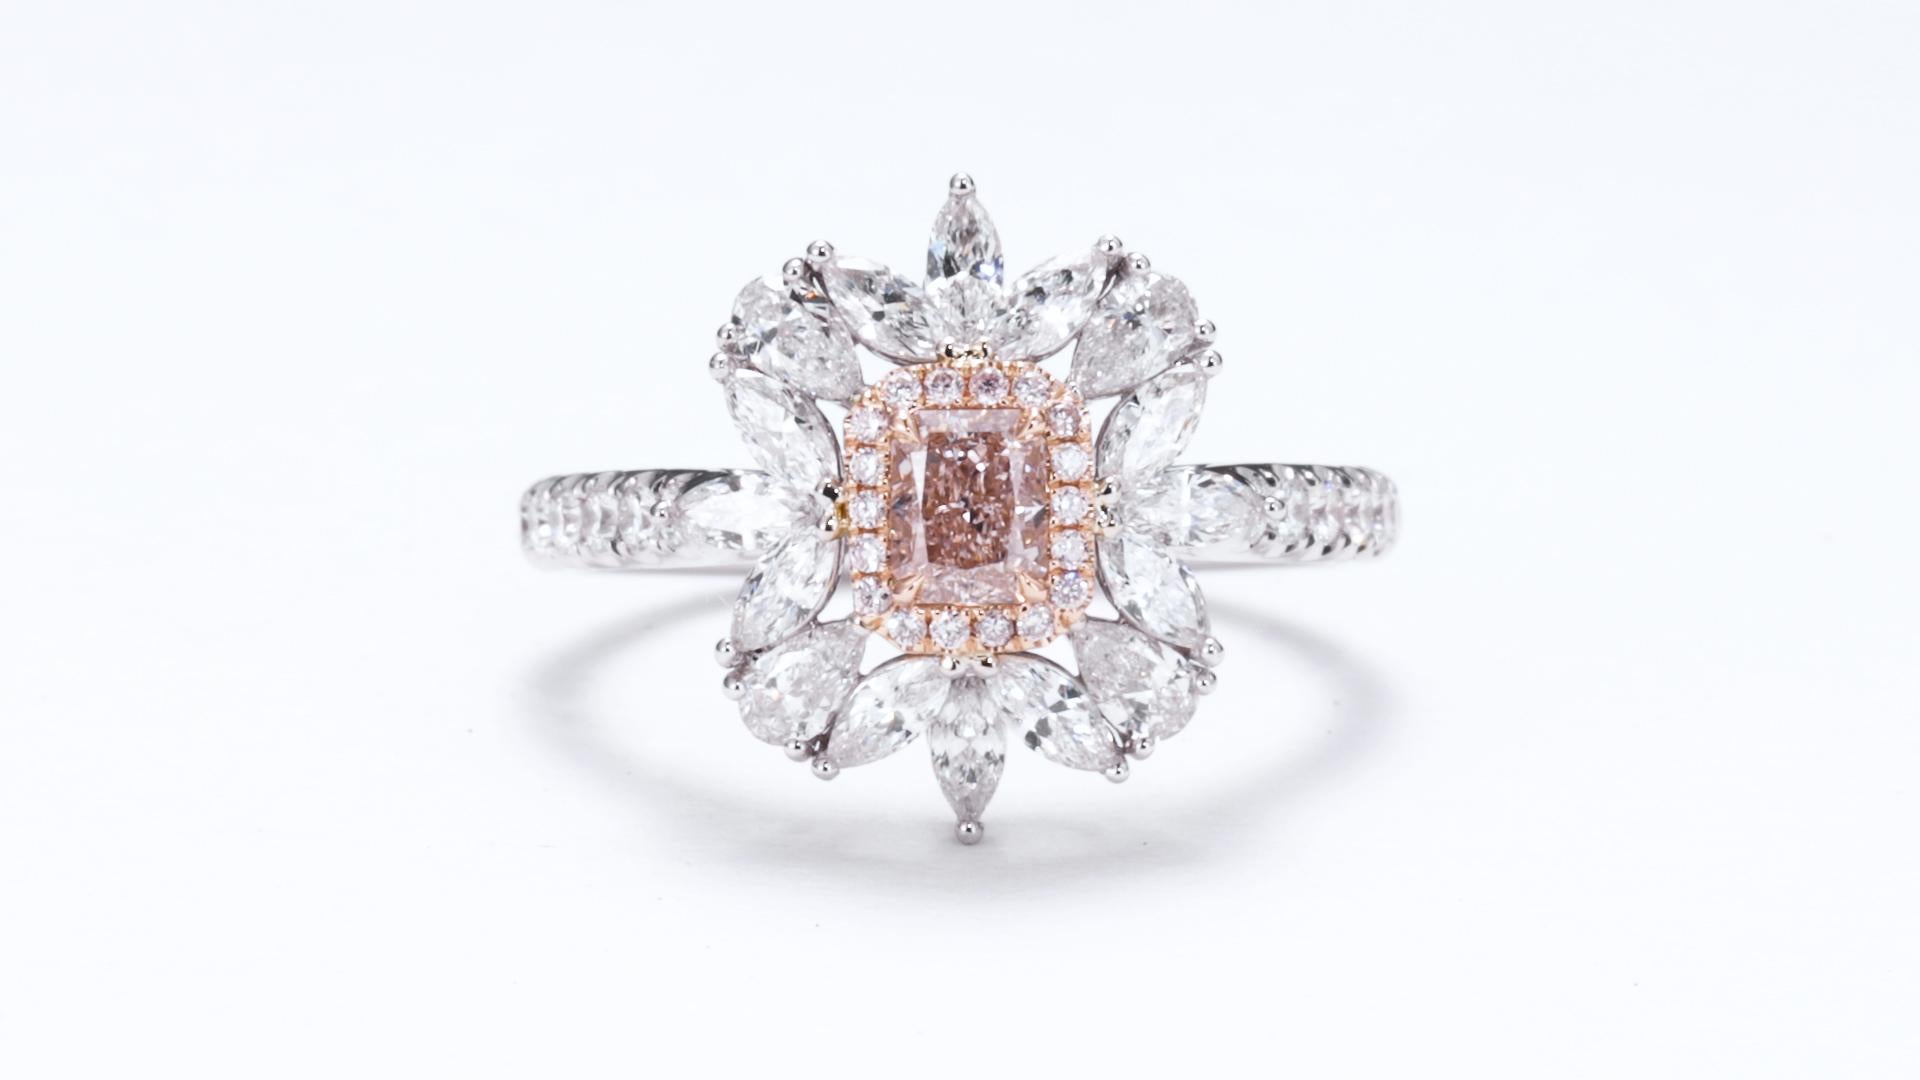 Gewicht und Form des Diamanten: Dieser exquisite Ring enthält einen atemberaubenden 0,37ct Natural Fancy Light Orangy Pink Diamanten, der in einer strahlenden Form geschliffen ist. Der Radiant-Schliff verbindet die Brillanz eines runden Diamanten